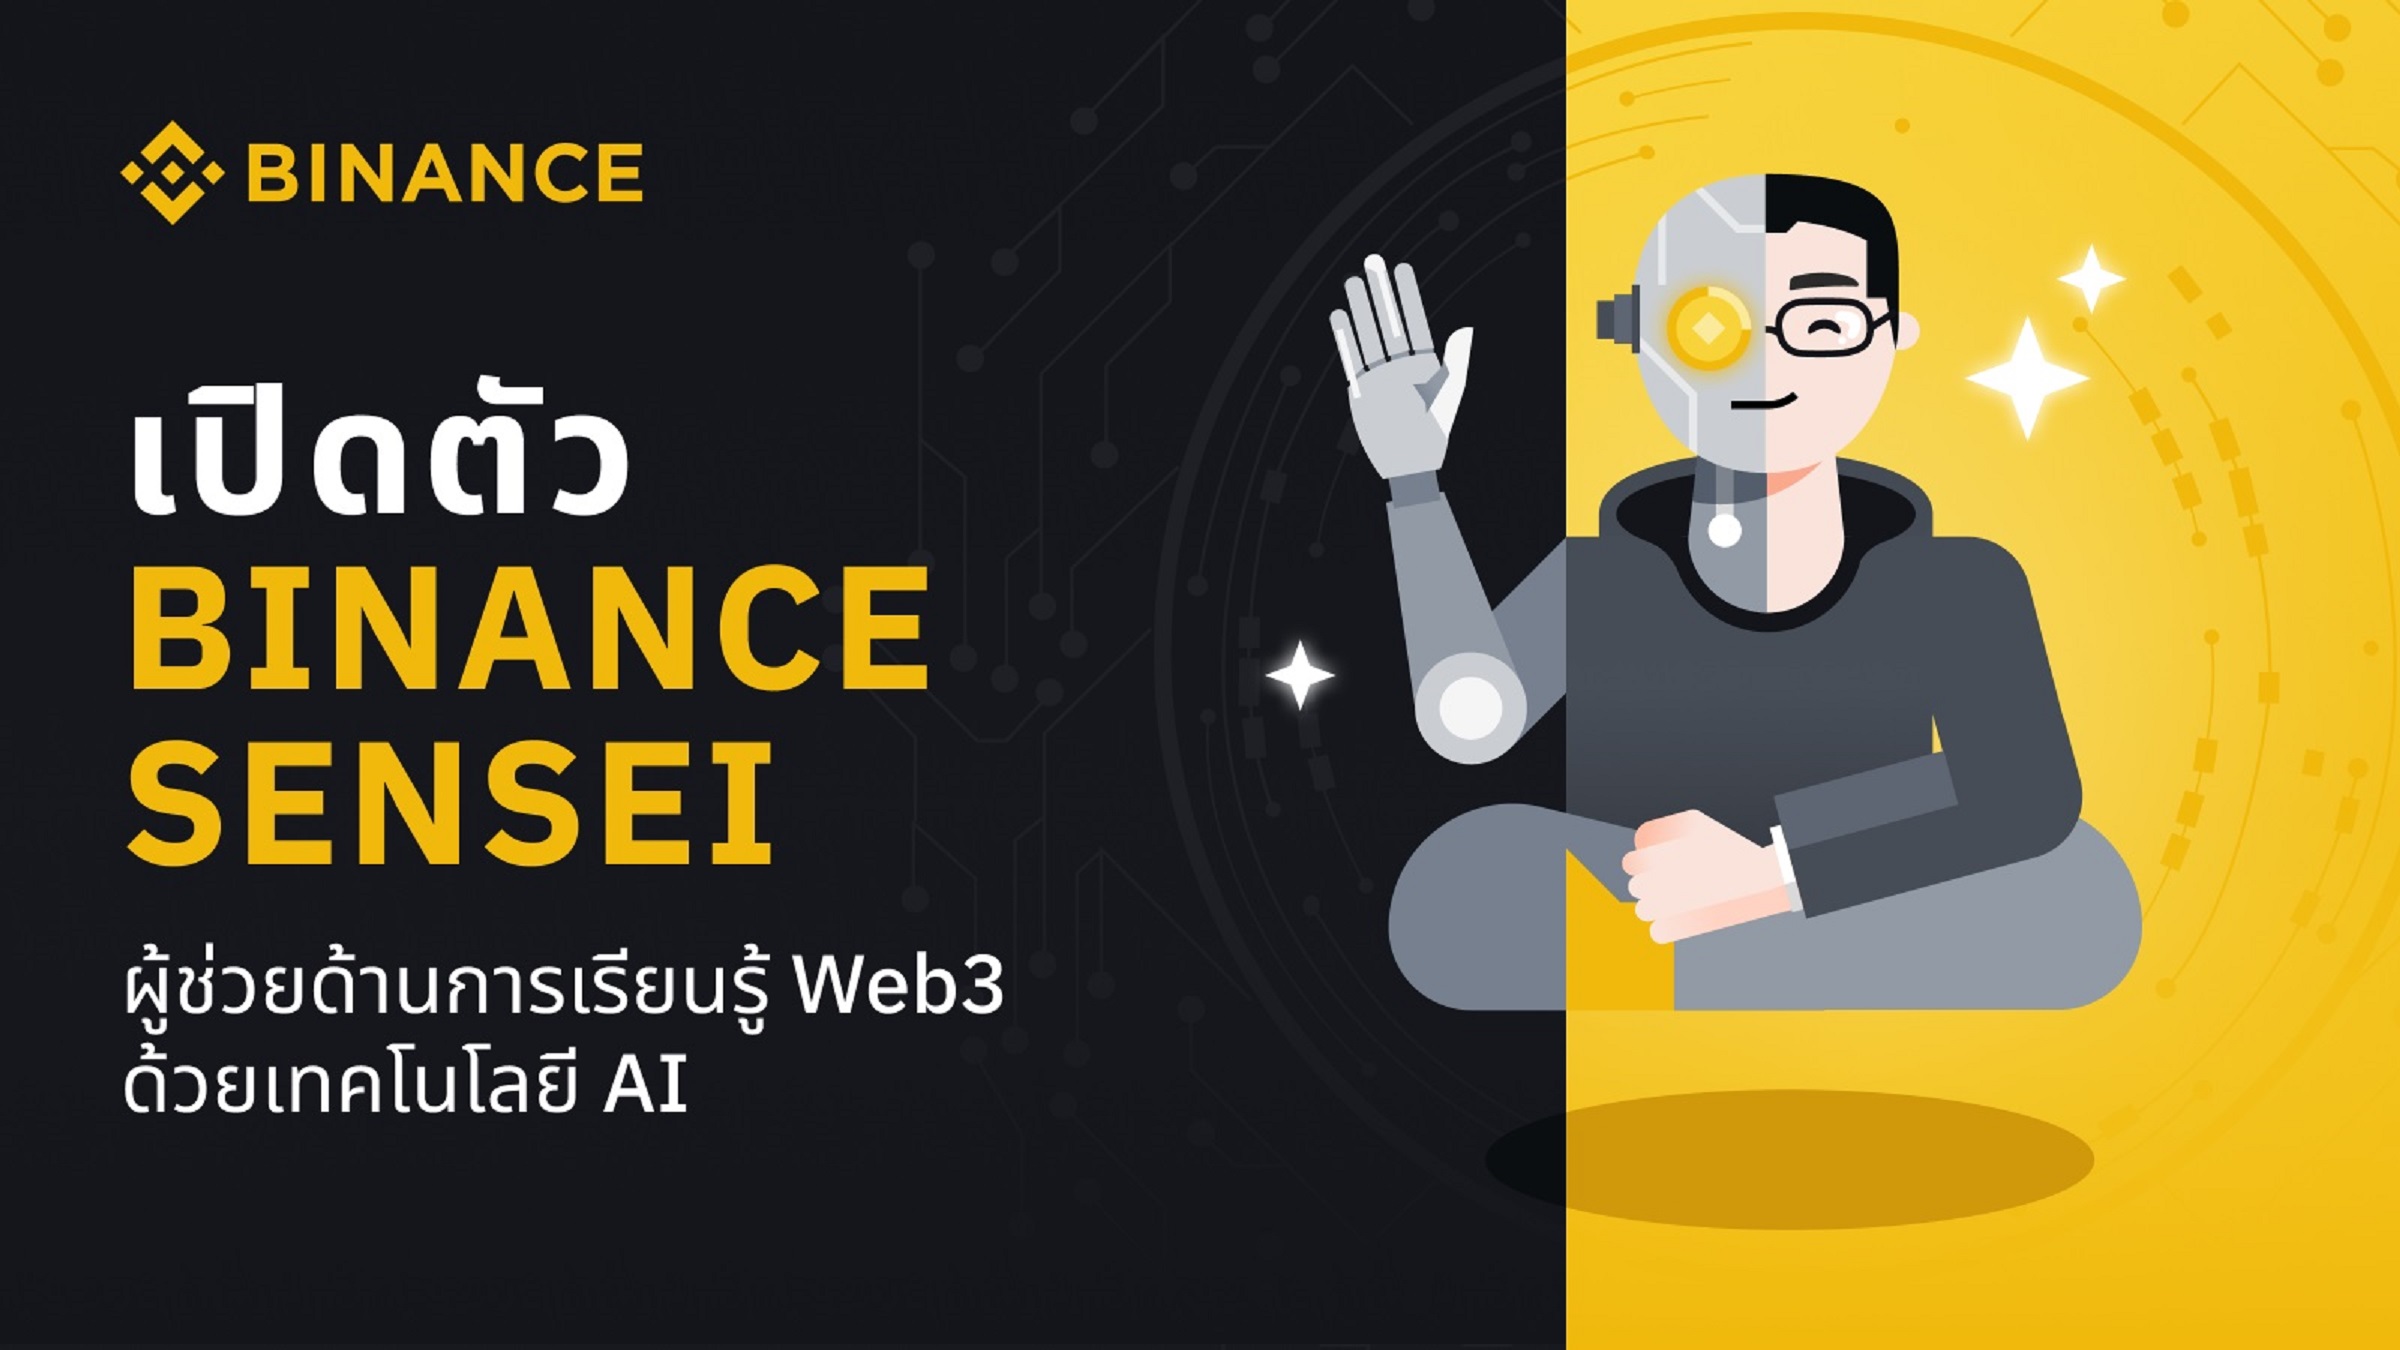 Binance เปิดตัว Binance Sensei ผู้ช่วยด้านการเรียนรู้ Web3 ด้วยเทคโนโลยี AI